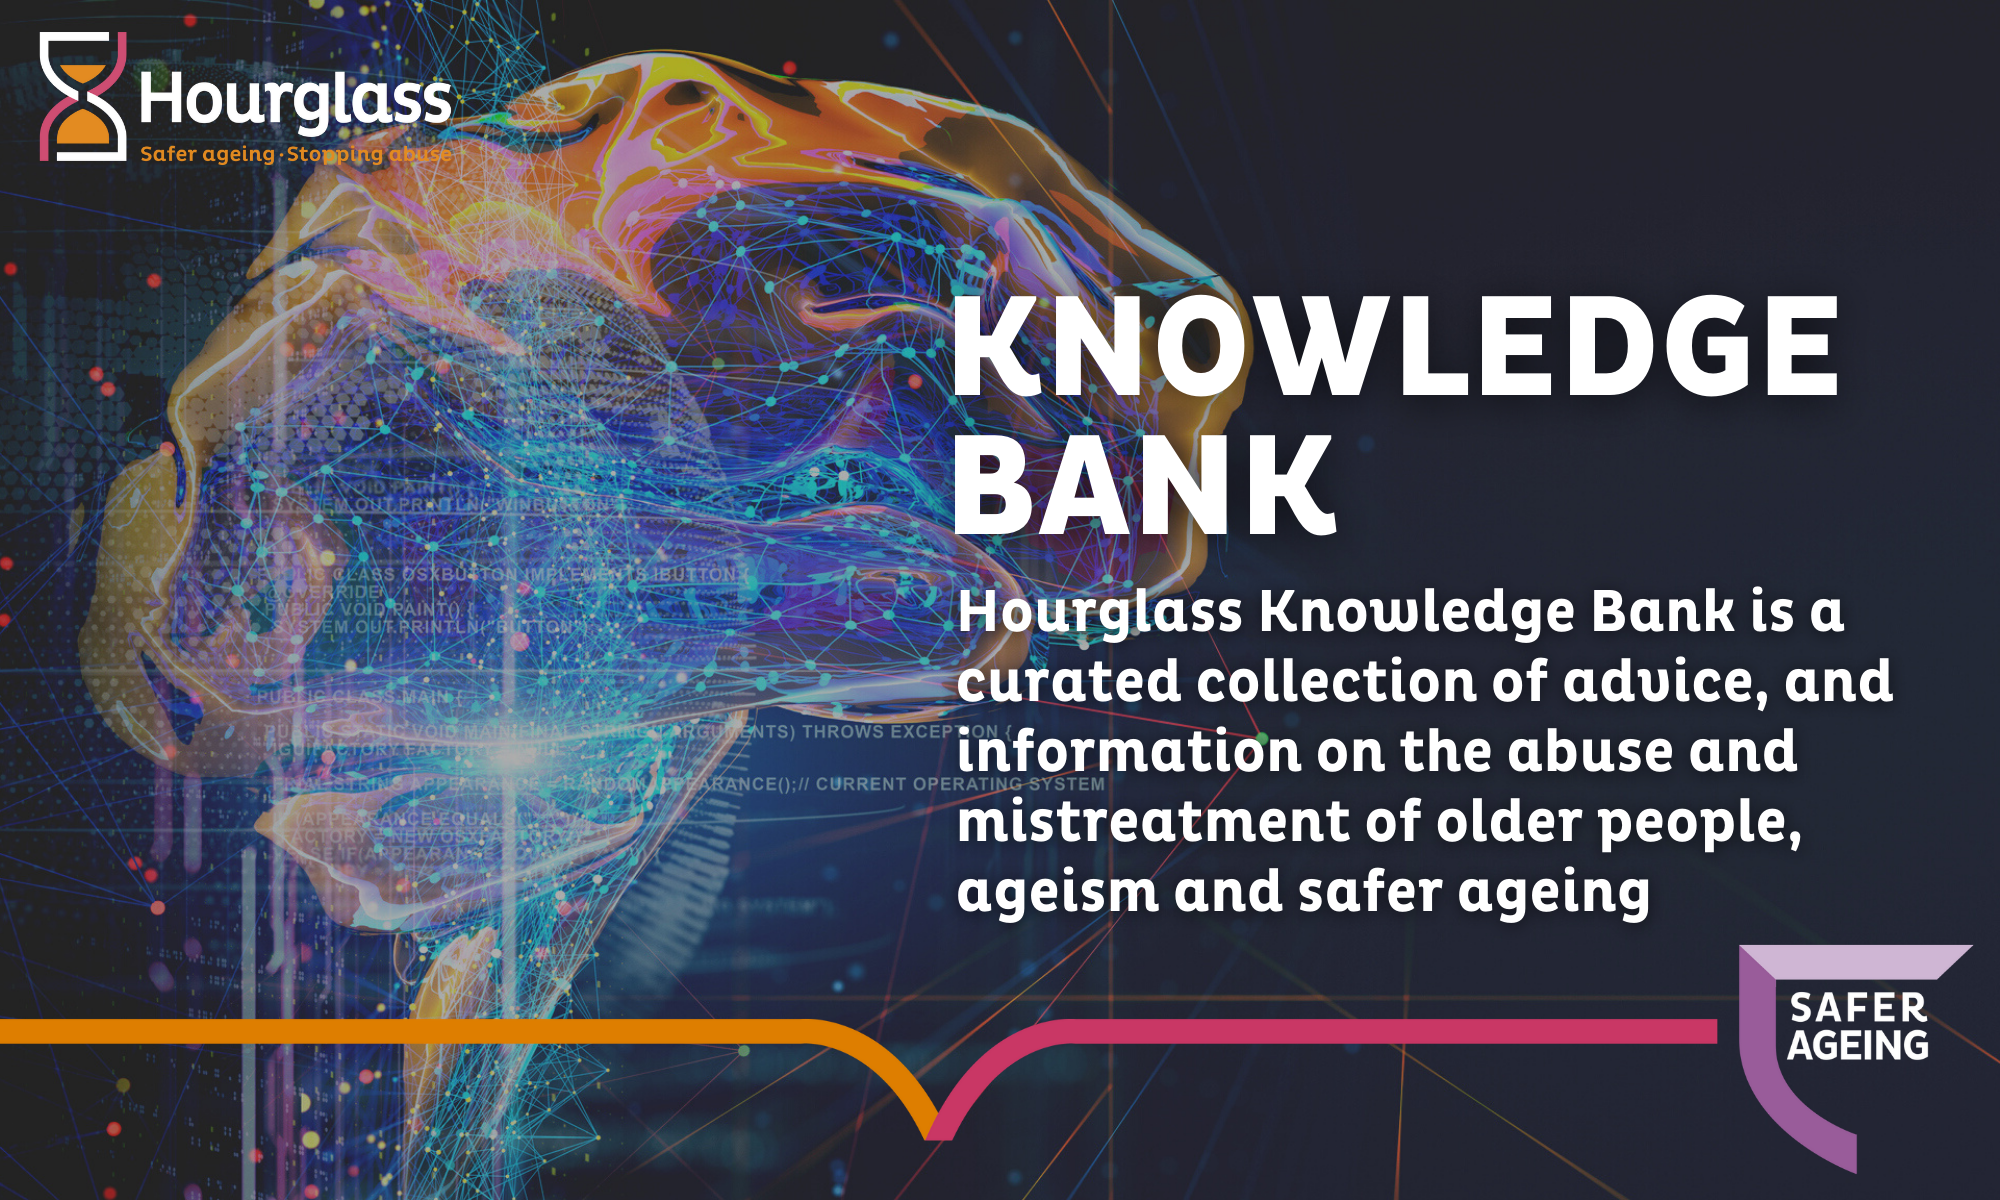 Hourglass Knowledge Bank